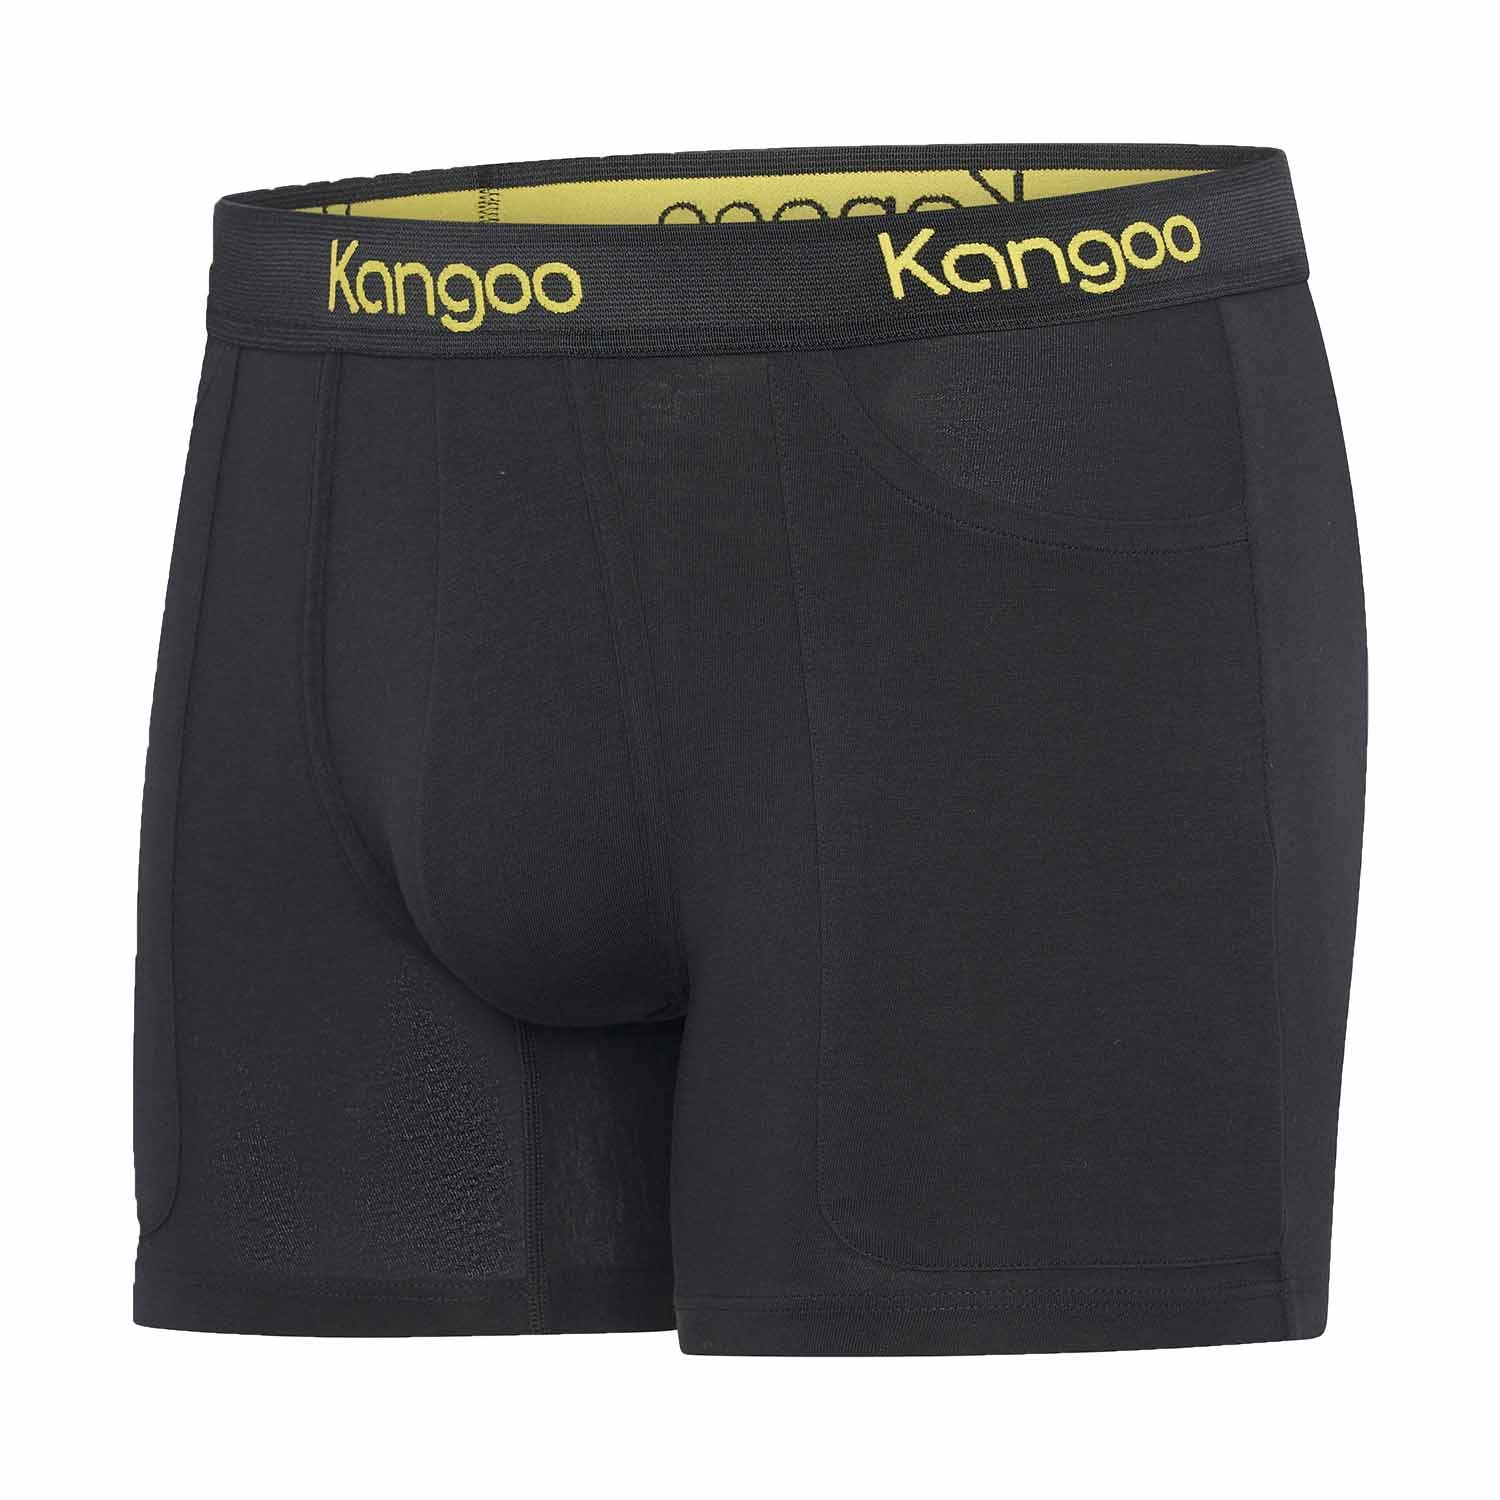 Kangoo | Black & Yellow | 2-pack